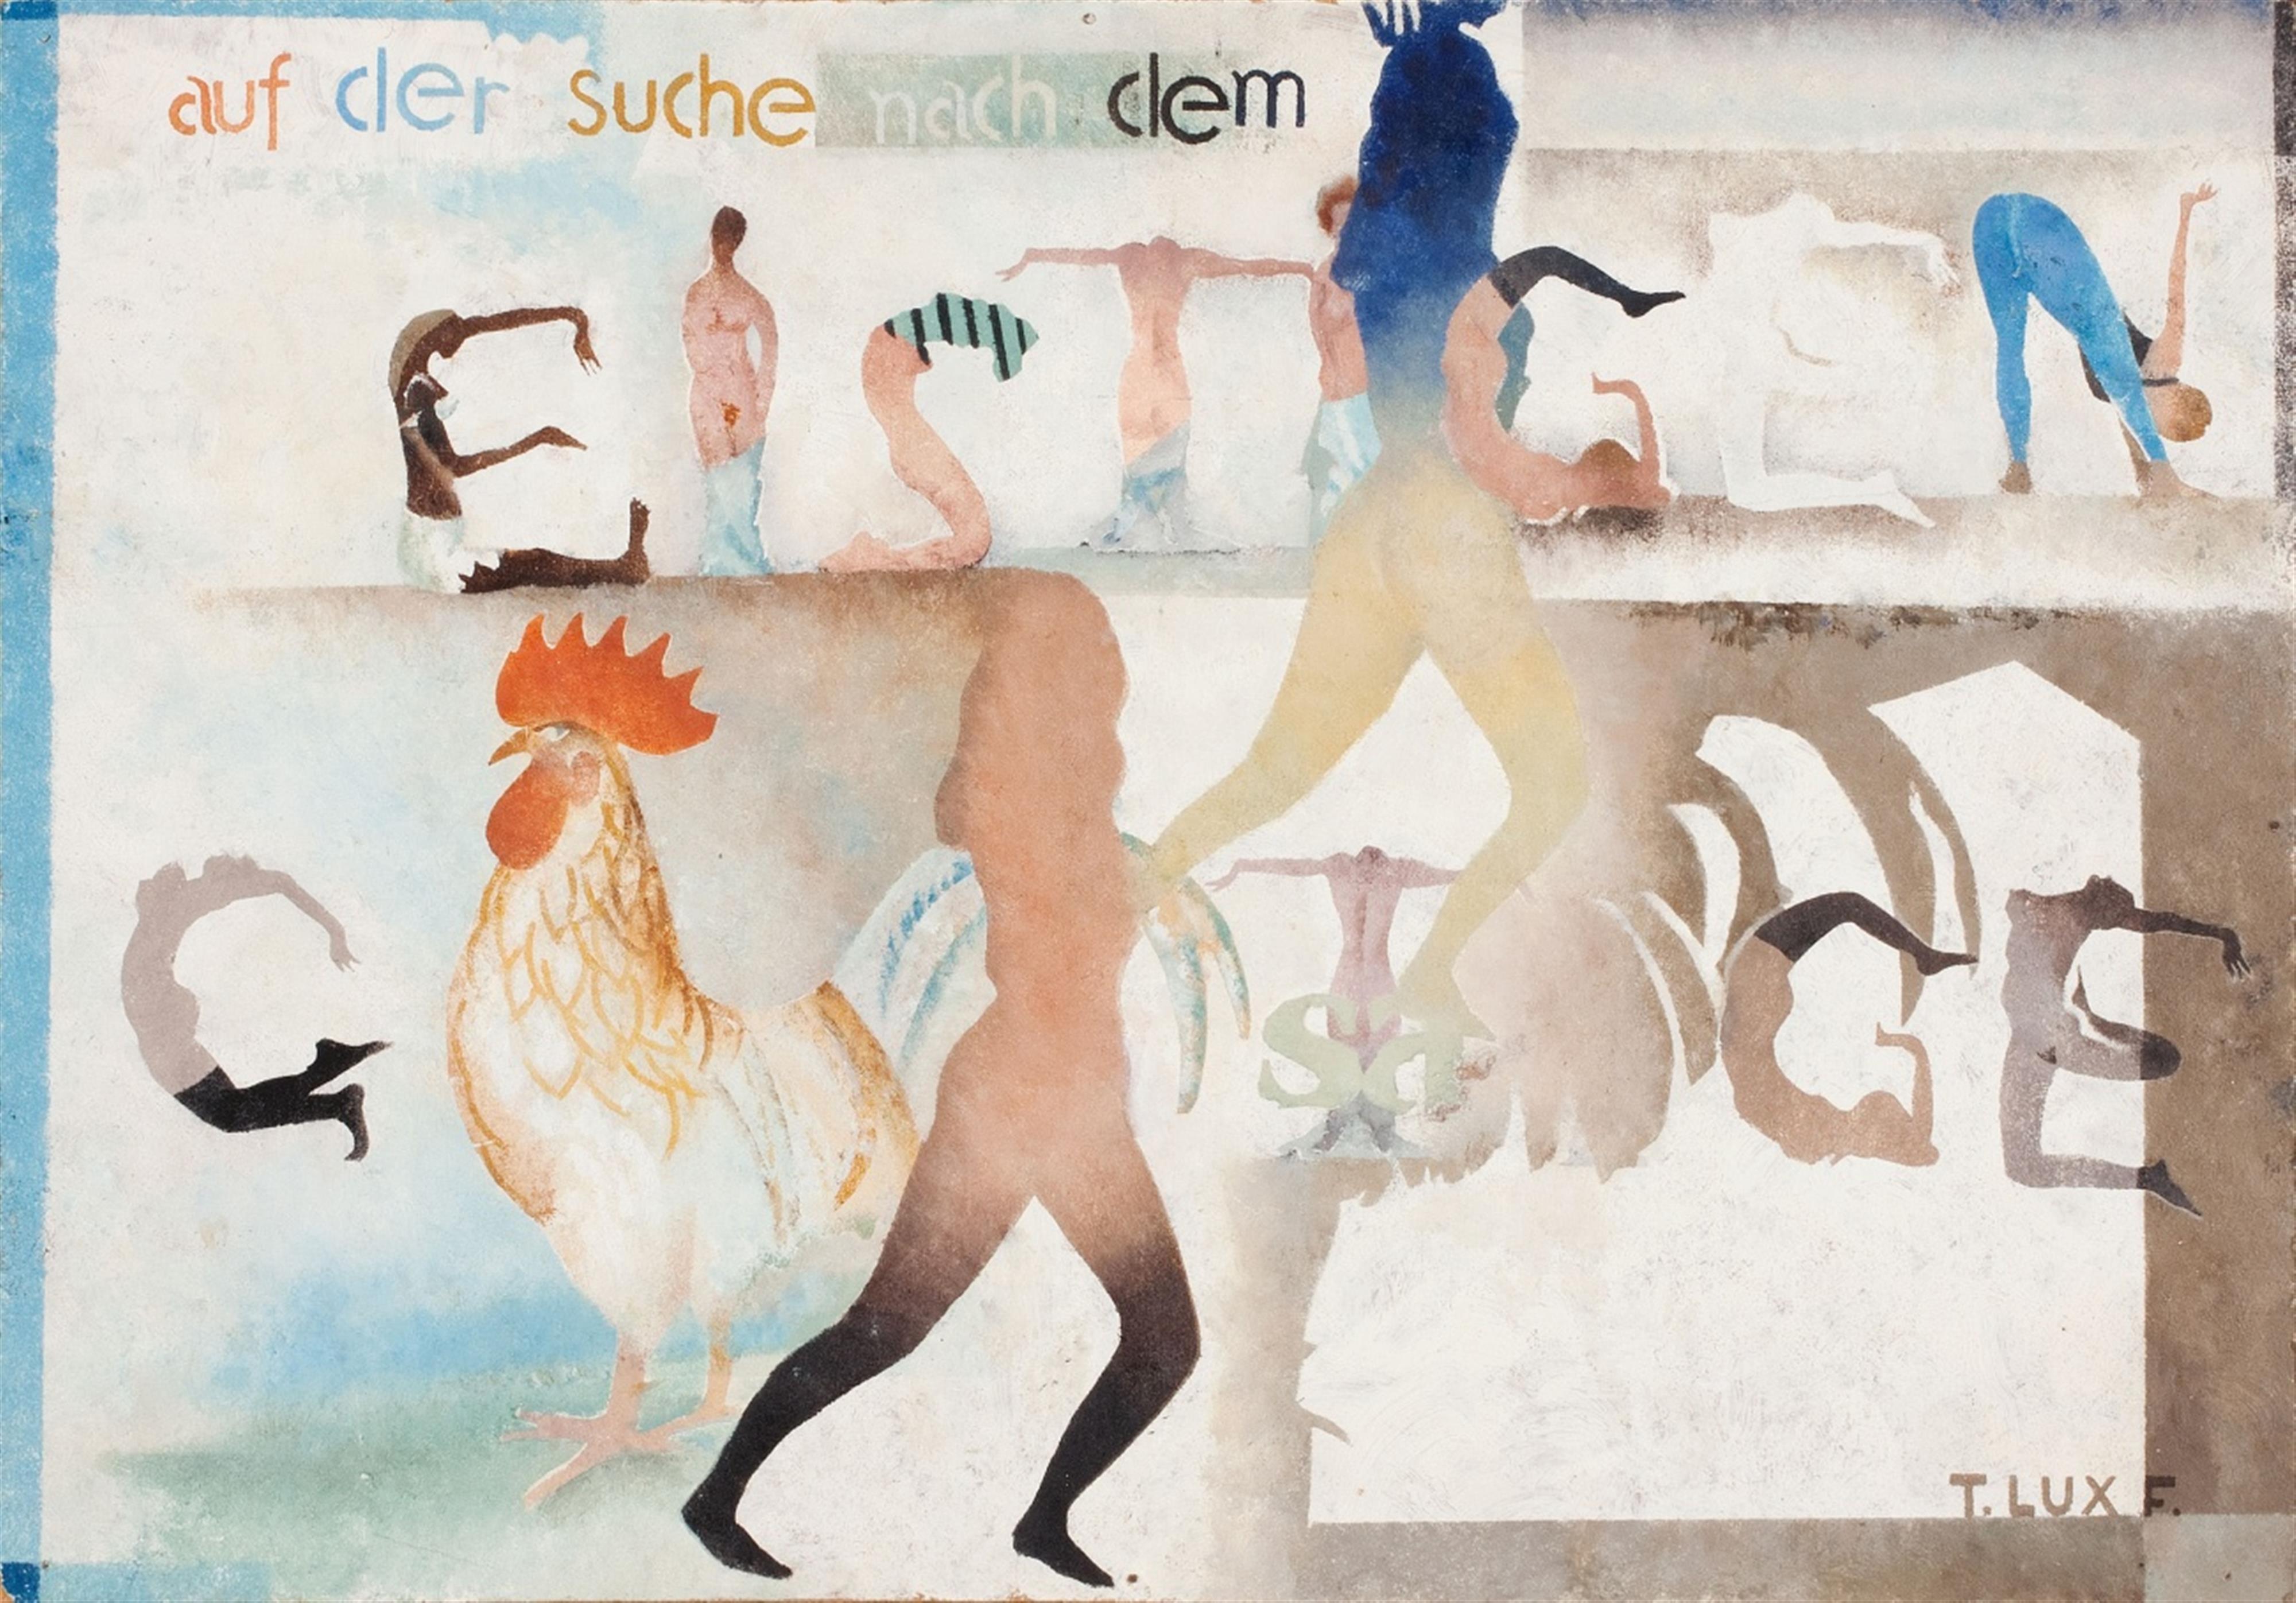 T. Lux Feininger - Auf der Suche nach dem Geistigen (Searching the Spiritual) - image-1